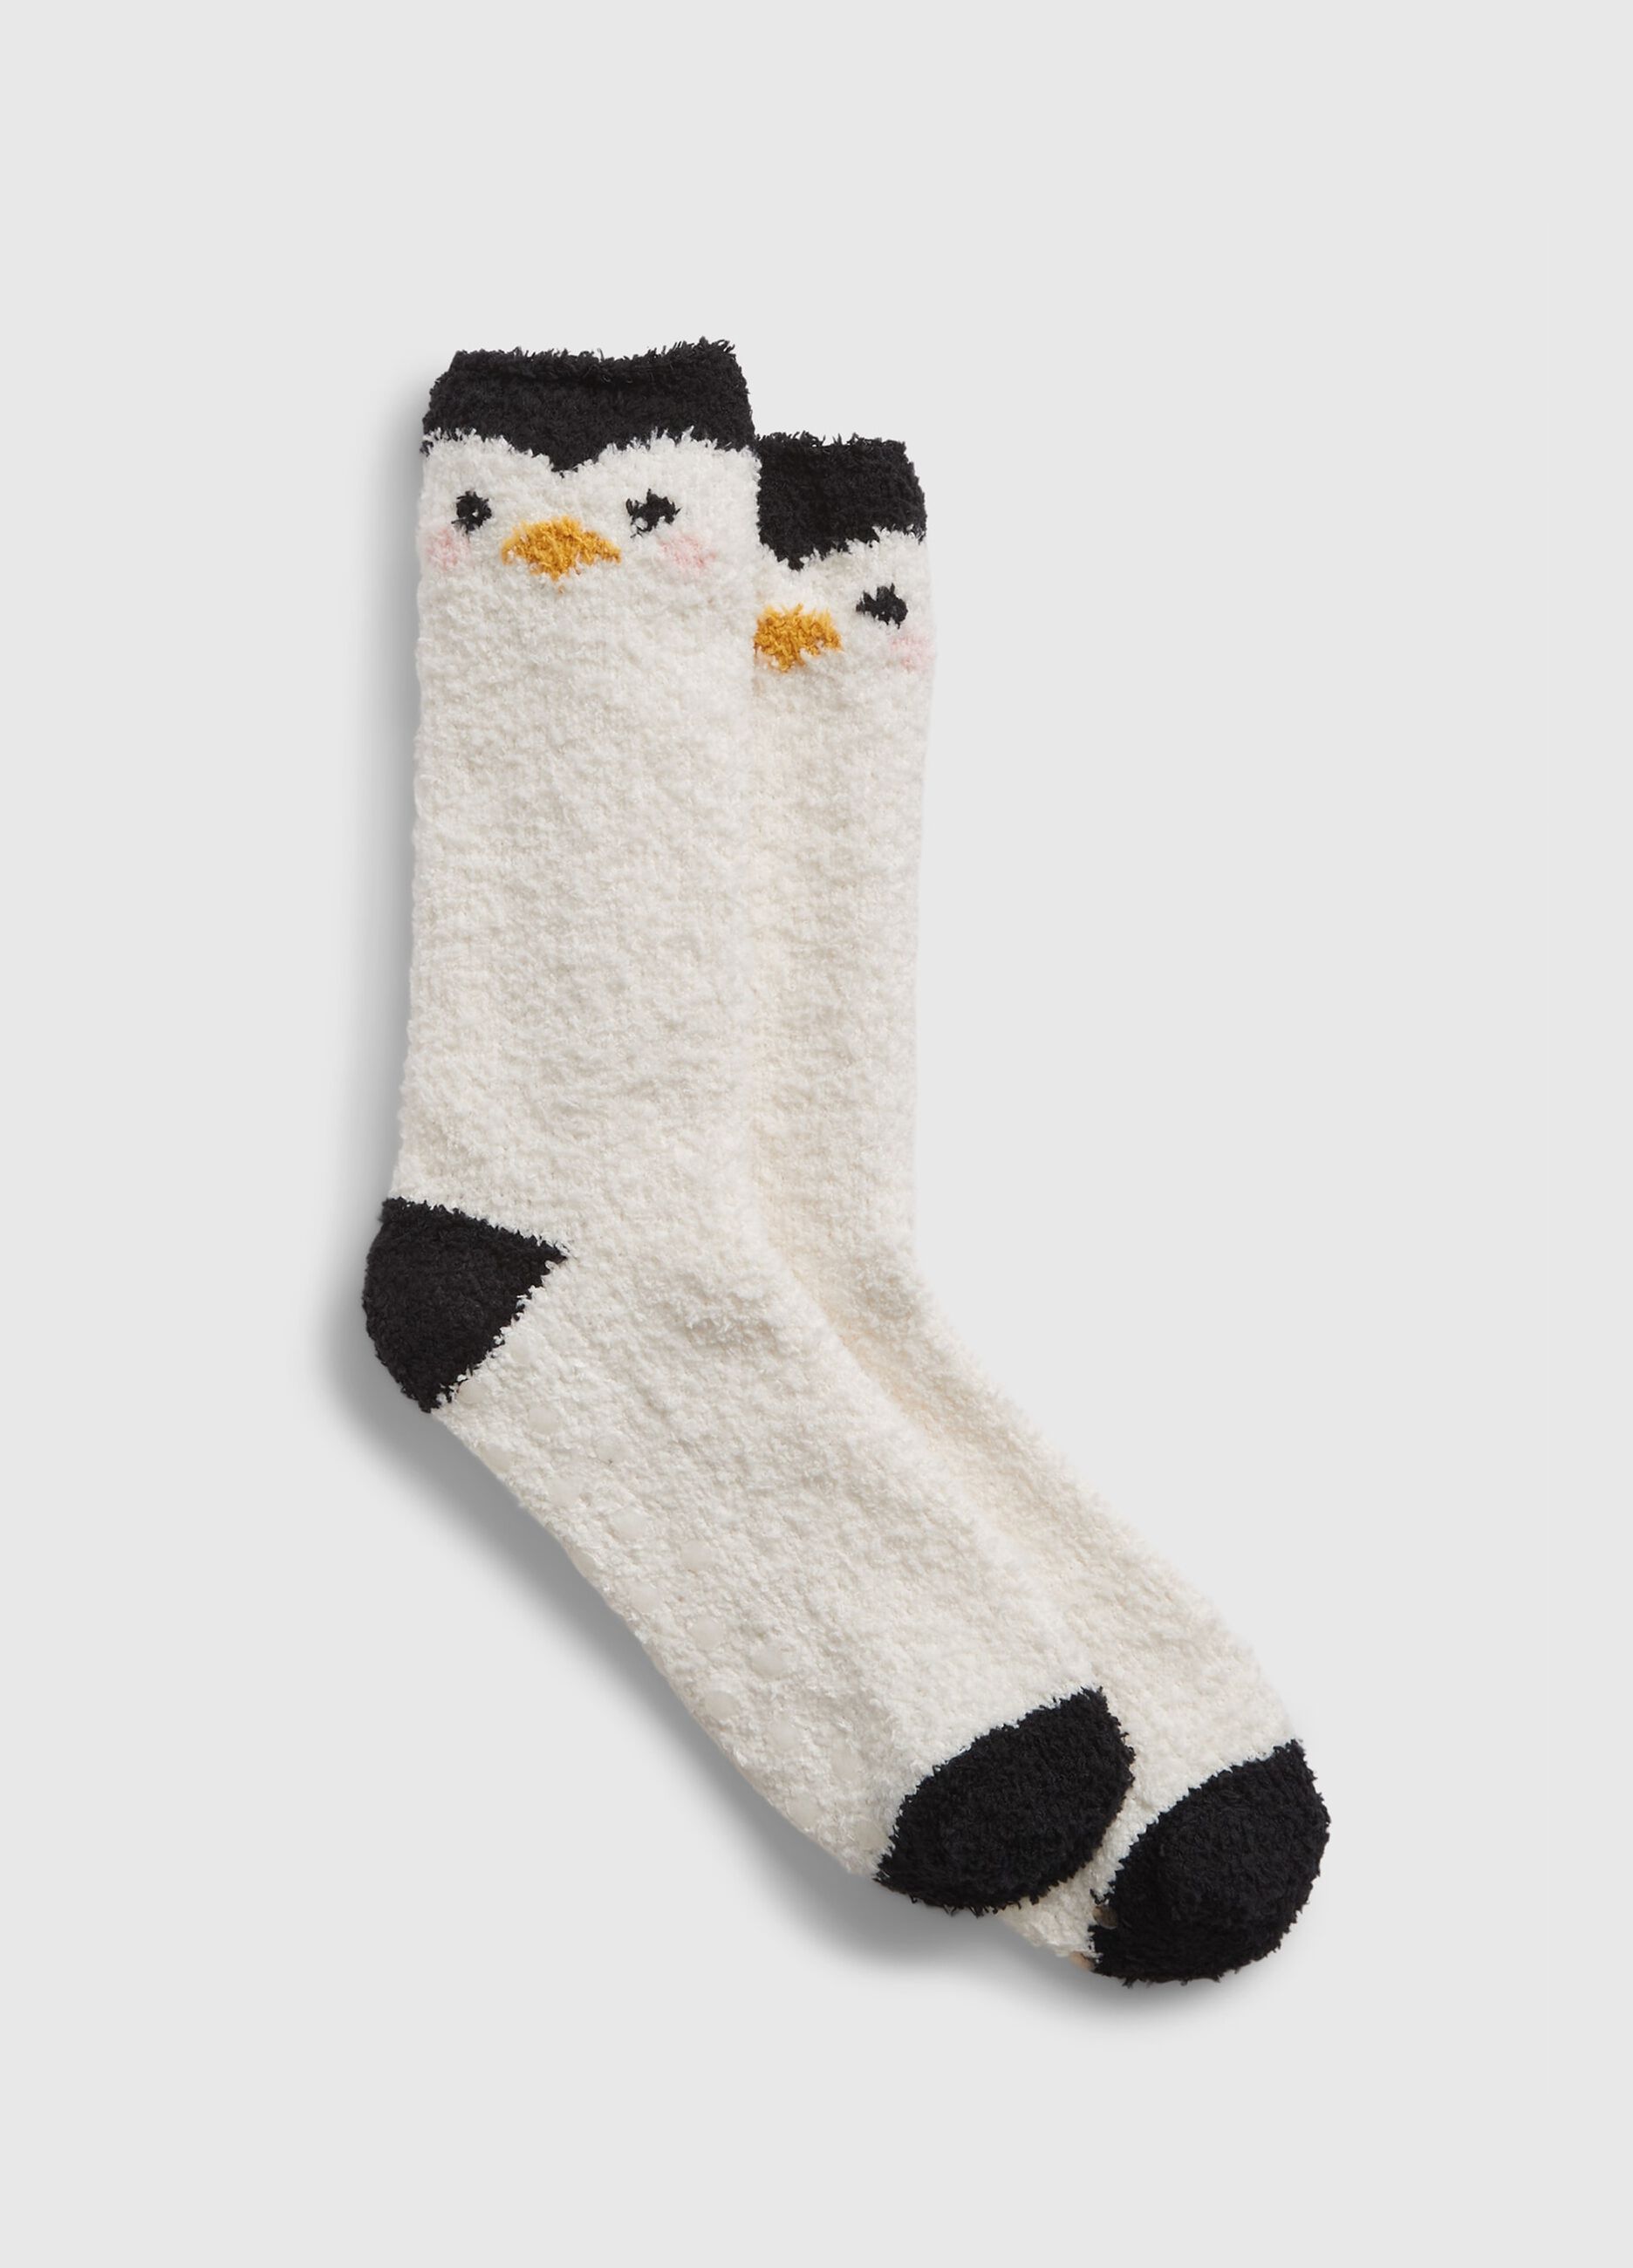 Slipper socks with penguin design